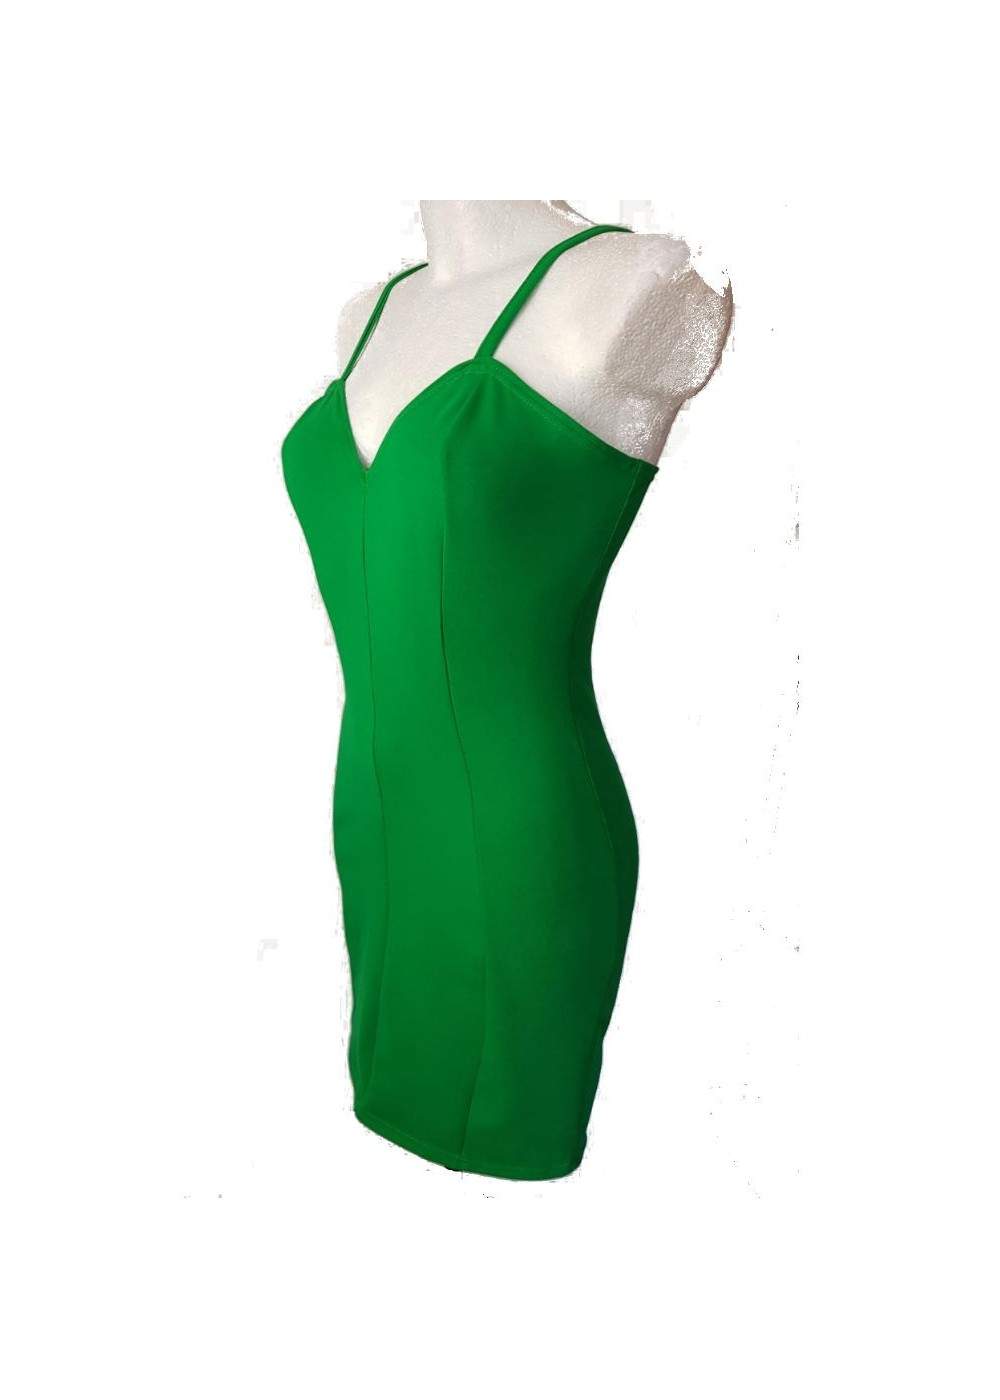 Green Stretch Cotton Strap Dress Size